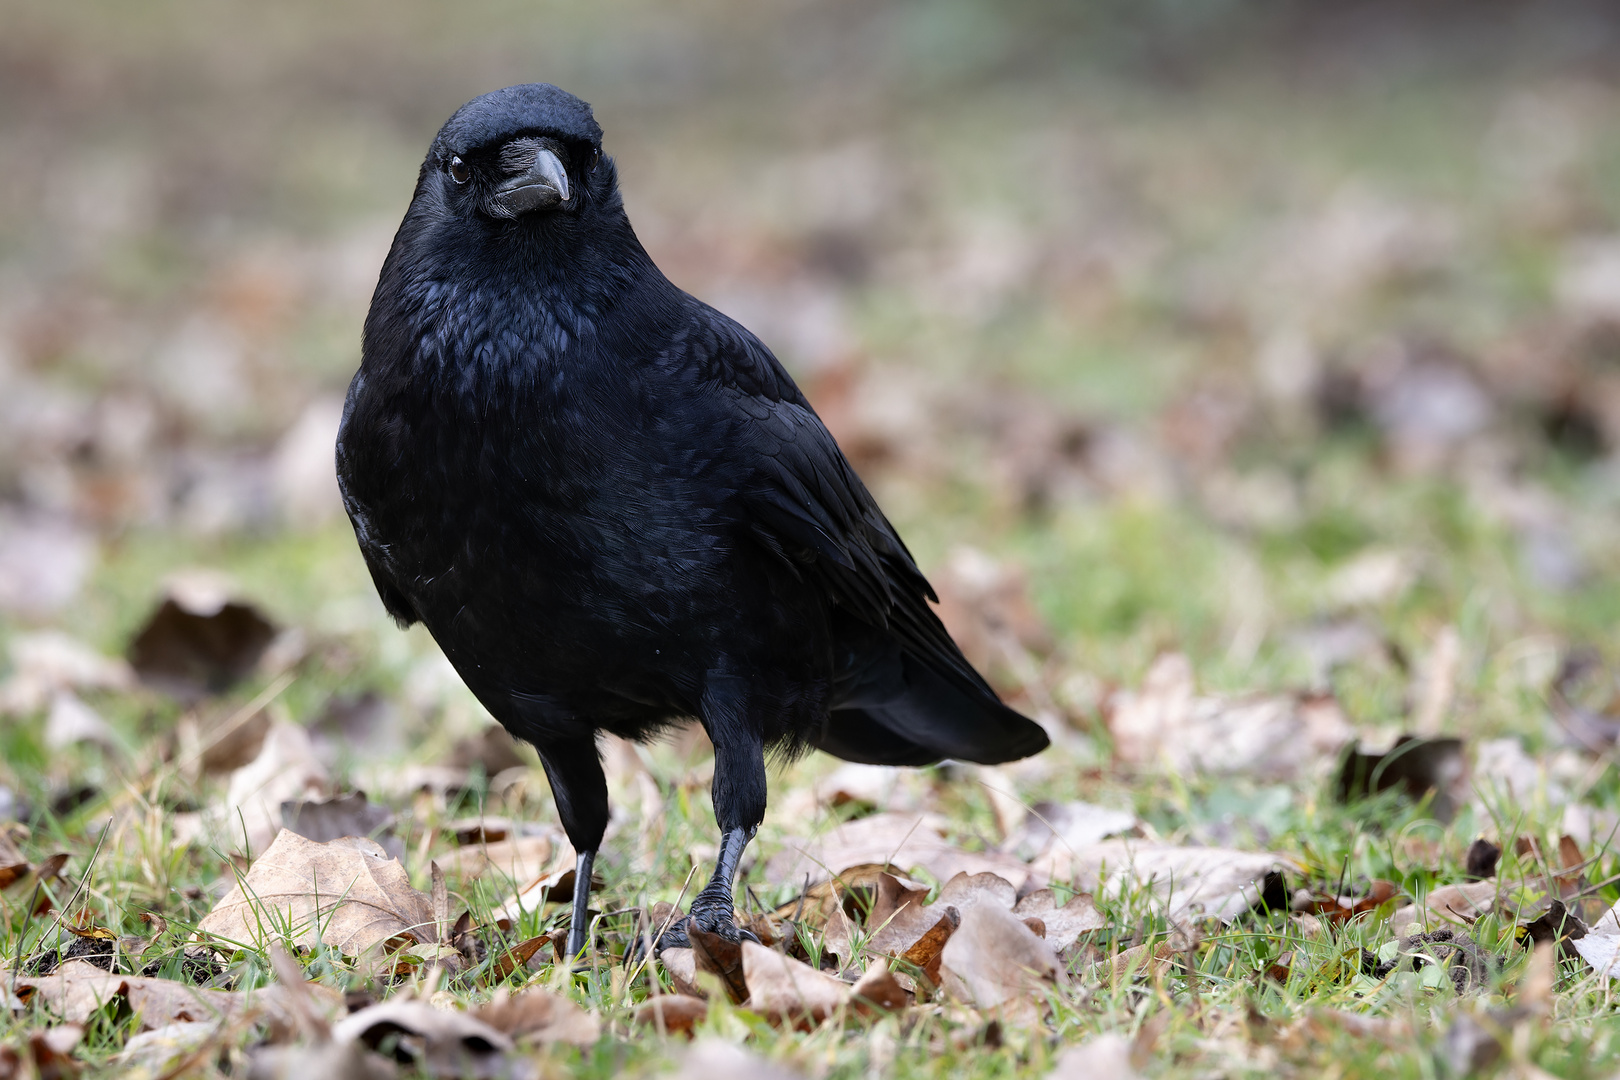 The Crow I